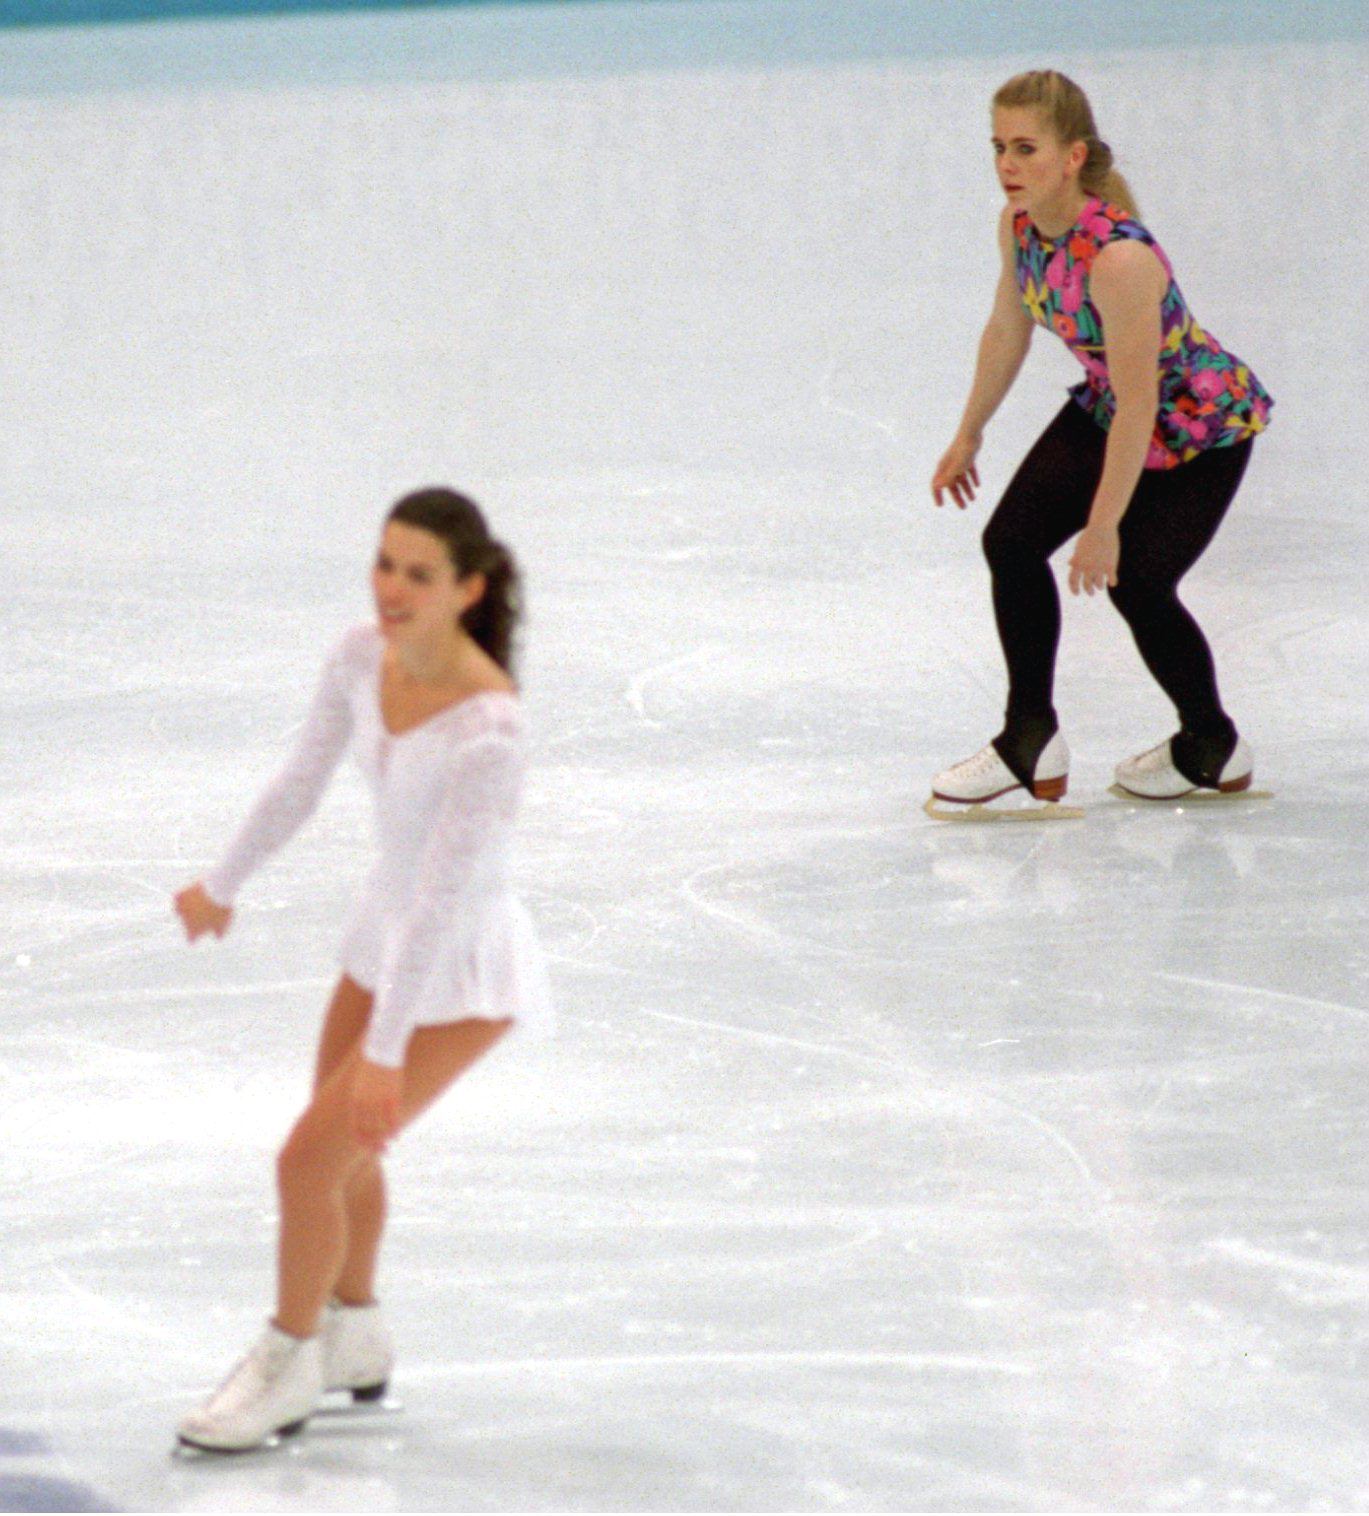 Tonya Harding Vs Nancy Kerrigan Inside Figure Skating S Biggest Scandal